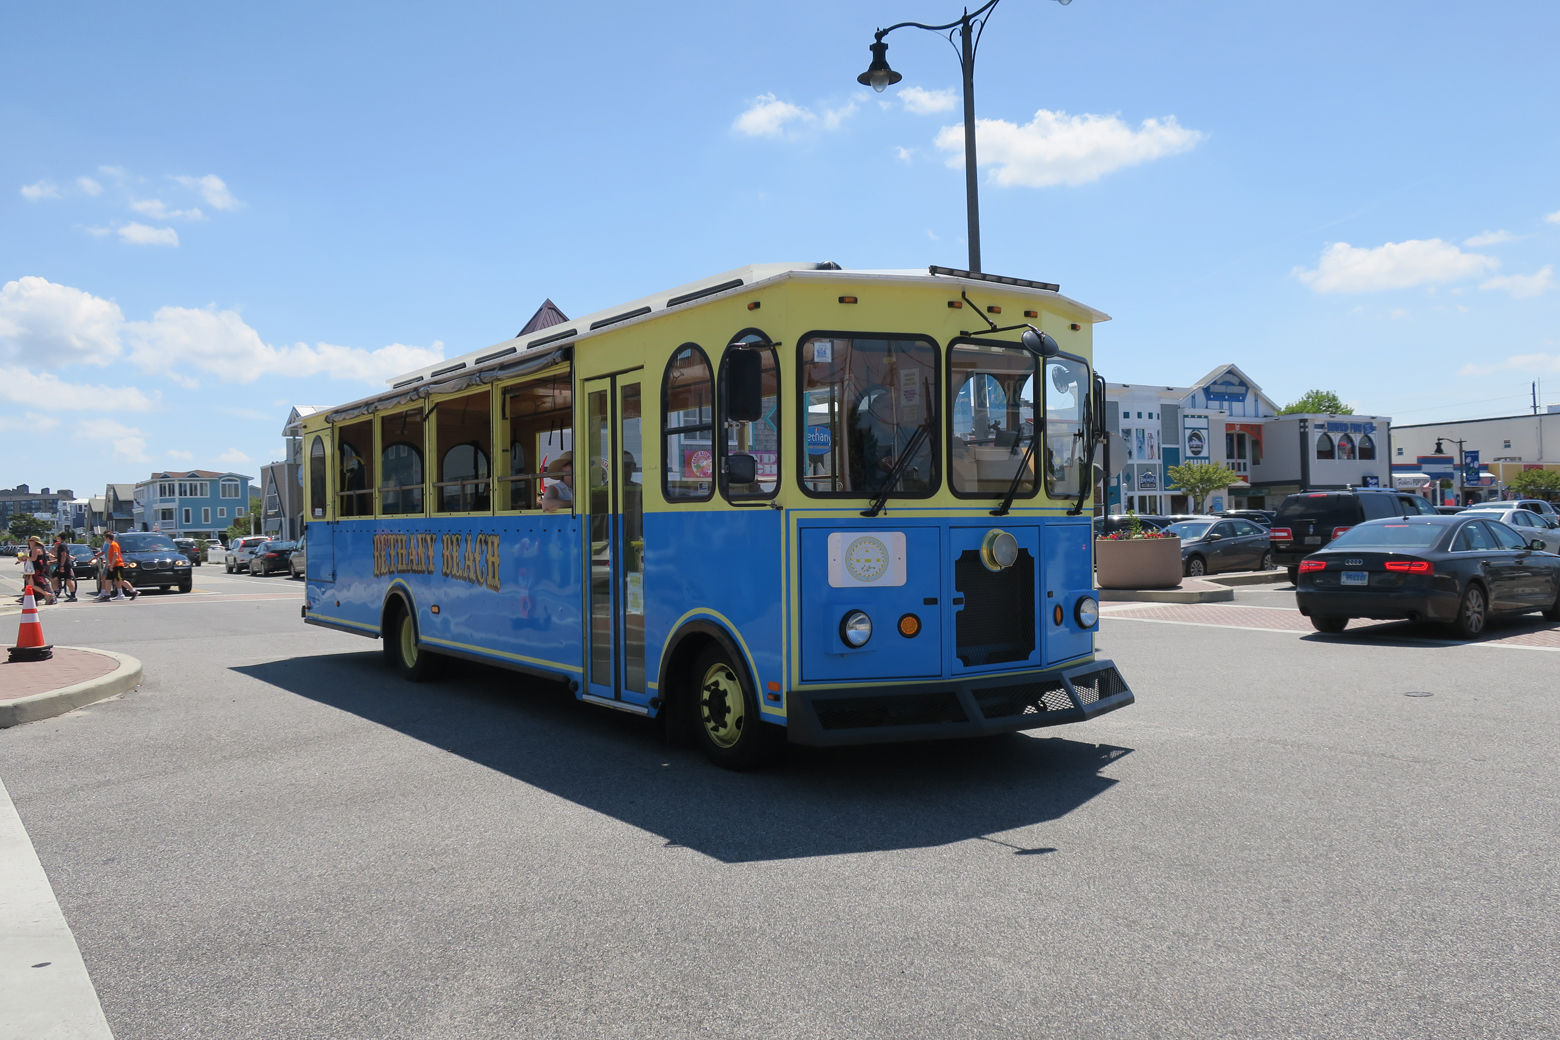 Bethany Beach trolley